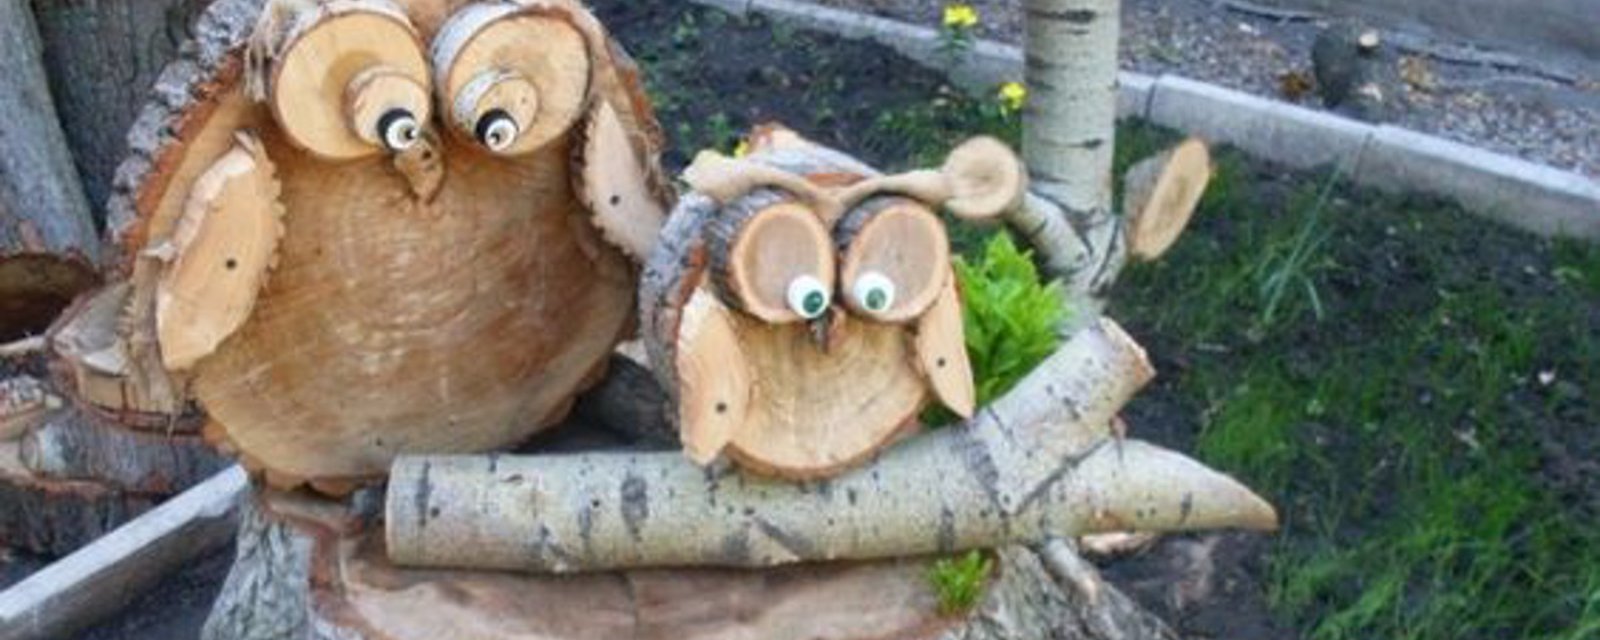 10 idées brico simples à faire avec du bois, parfaites pour les débutants! 